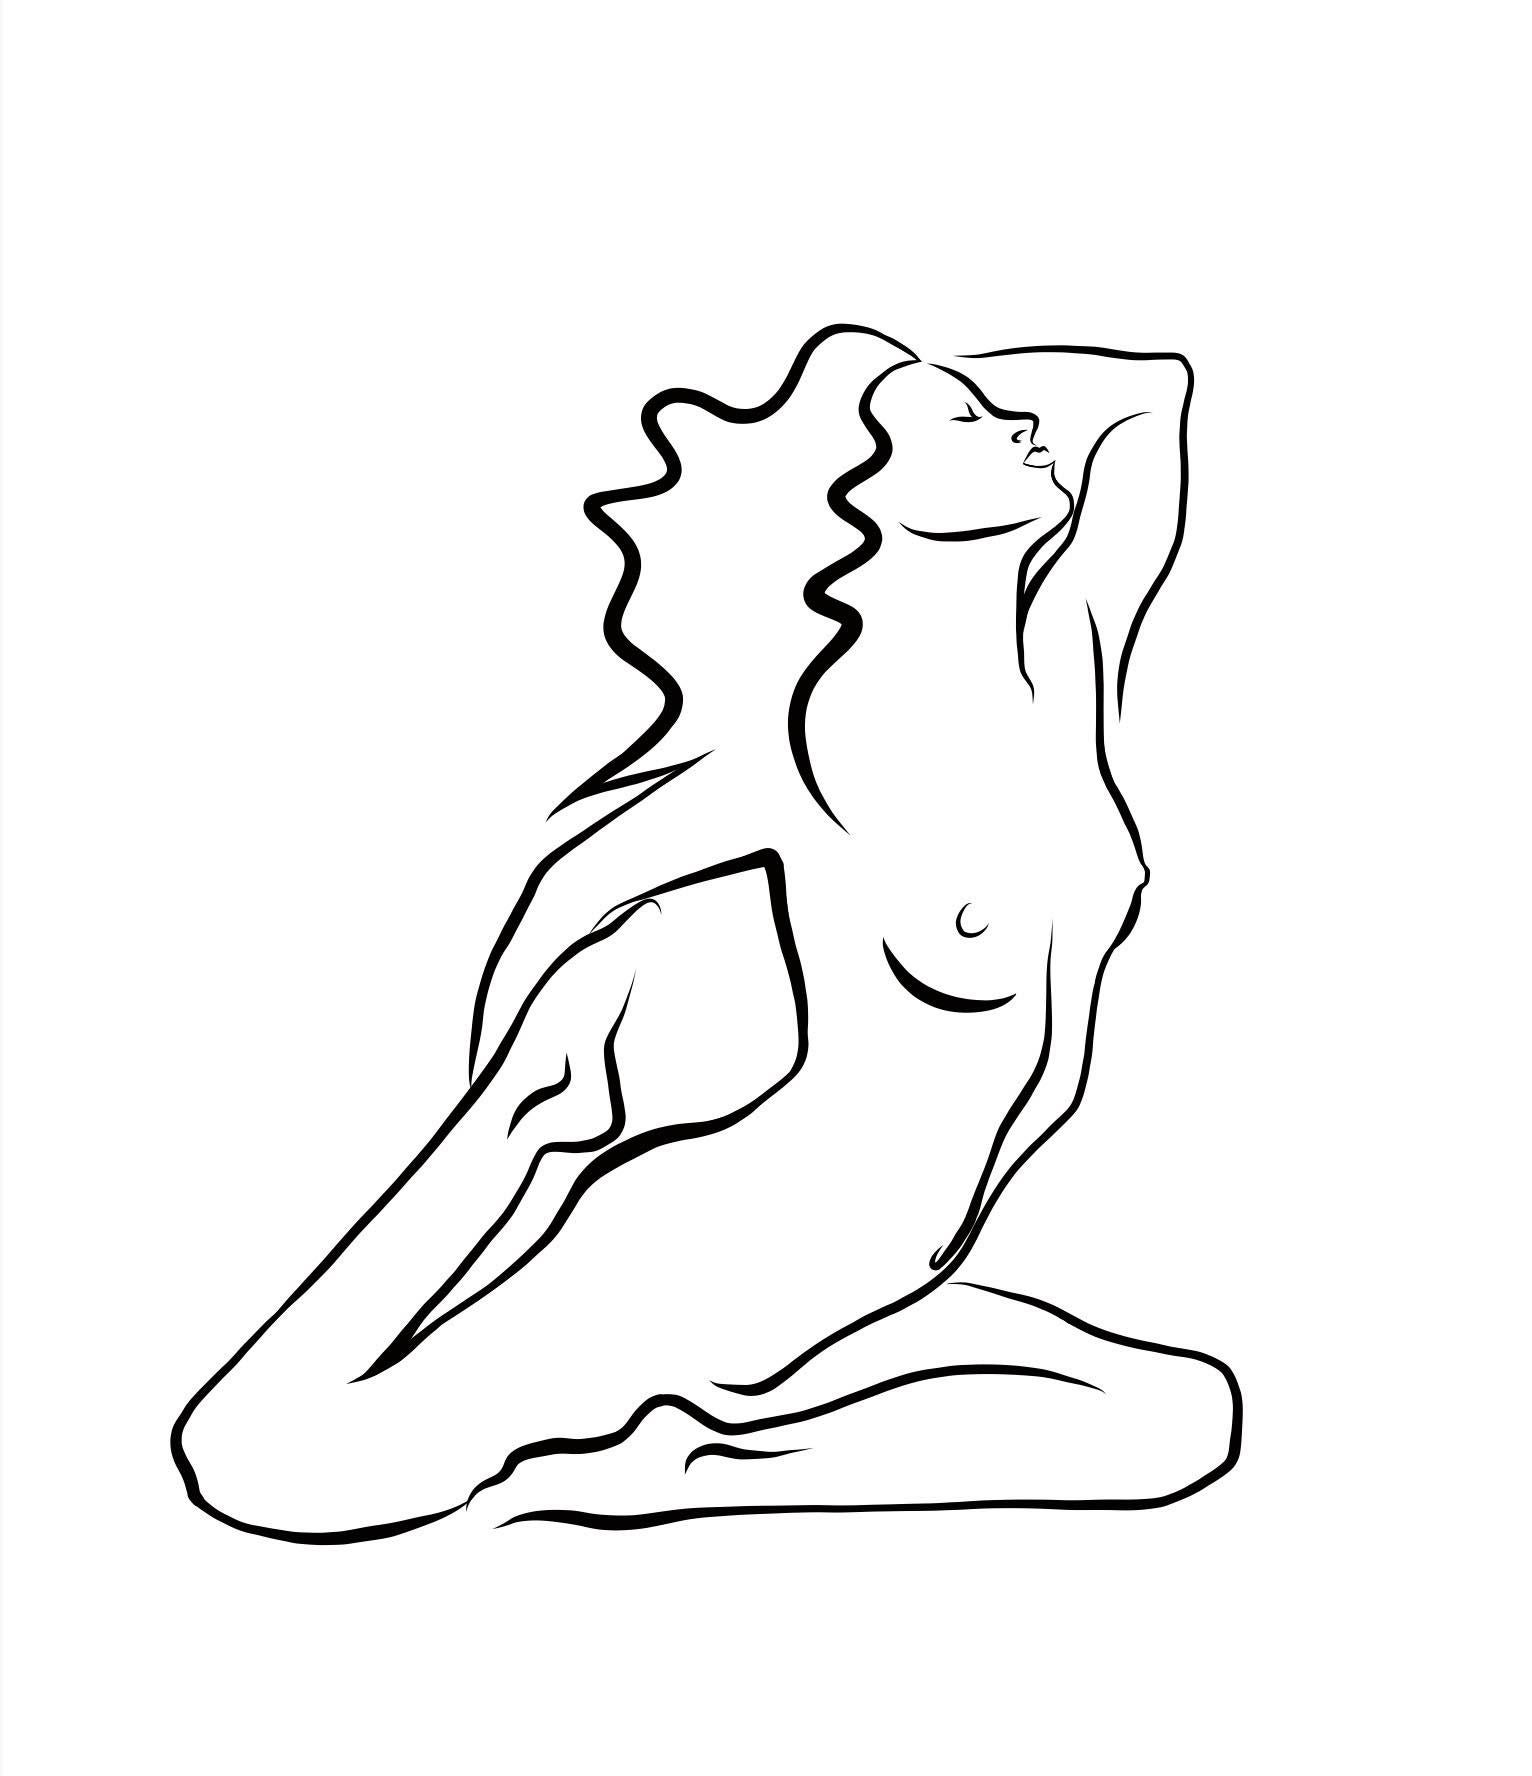 Haiku #28 - Digital Vector Drawing Kneeling Female Nude Woman Figure - Art by Michael Binkley